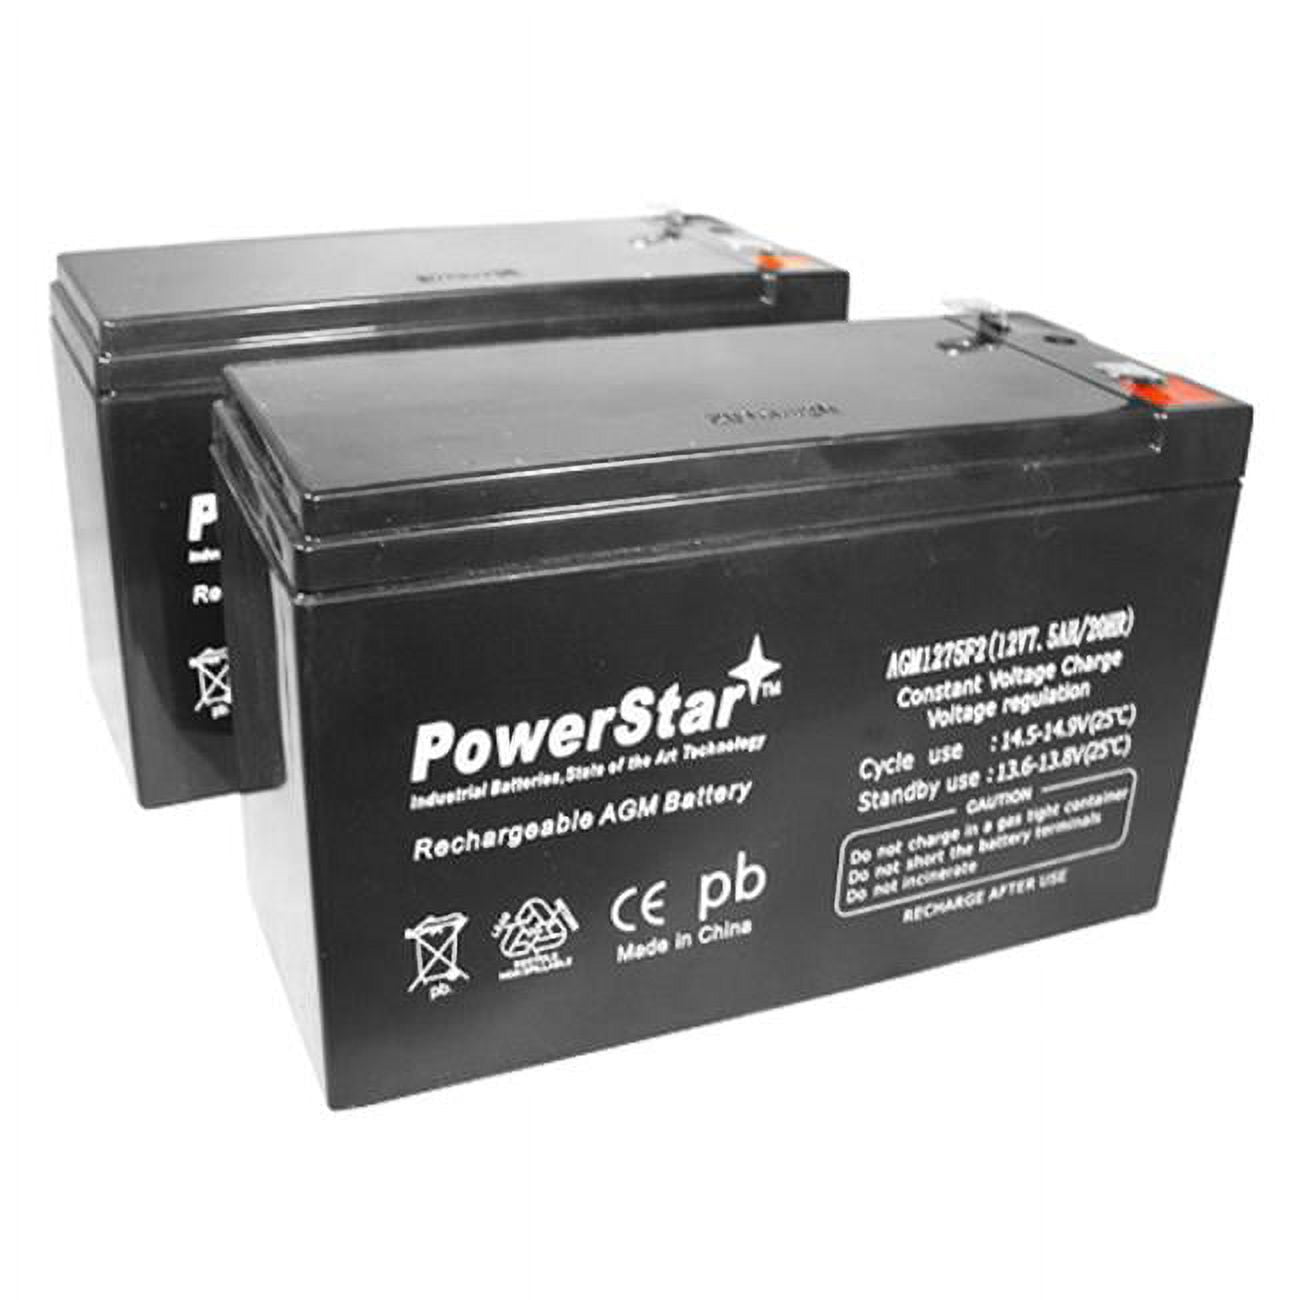 Batterie 12V 95Ah 800A 303x175x227 mm stecopower - 493